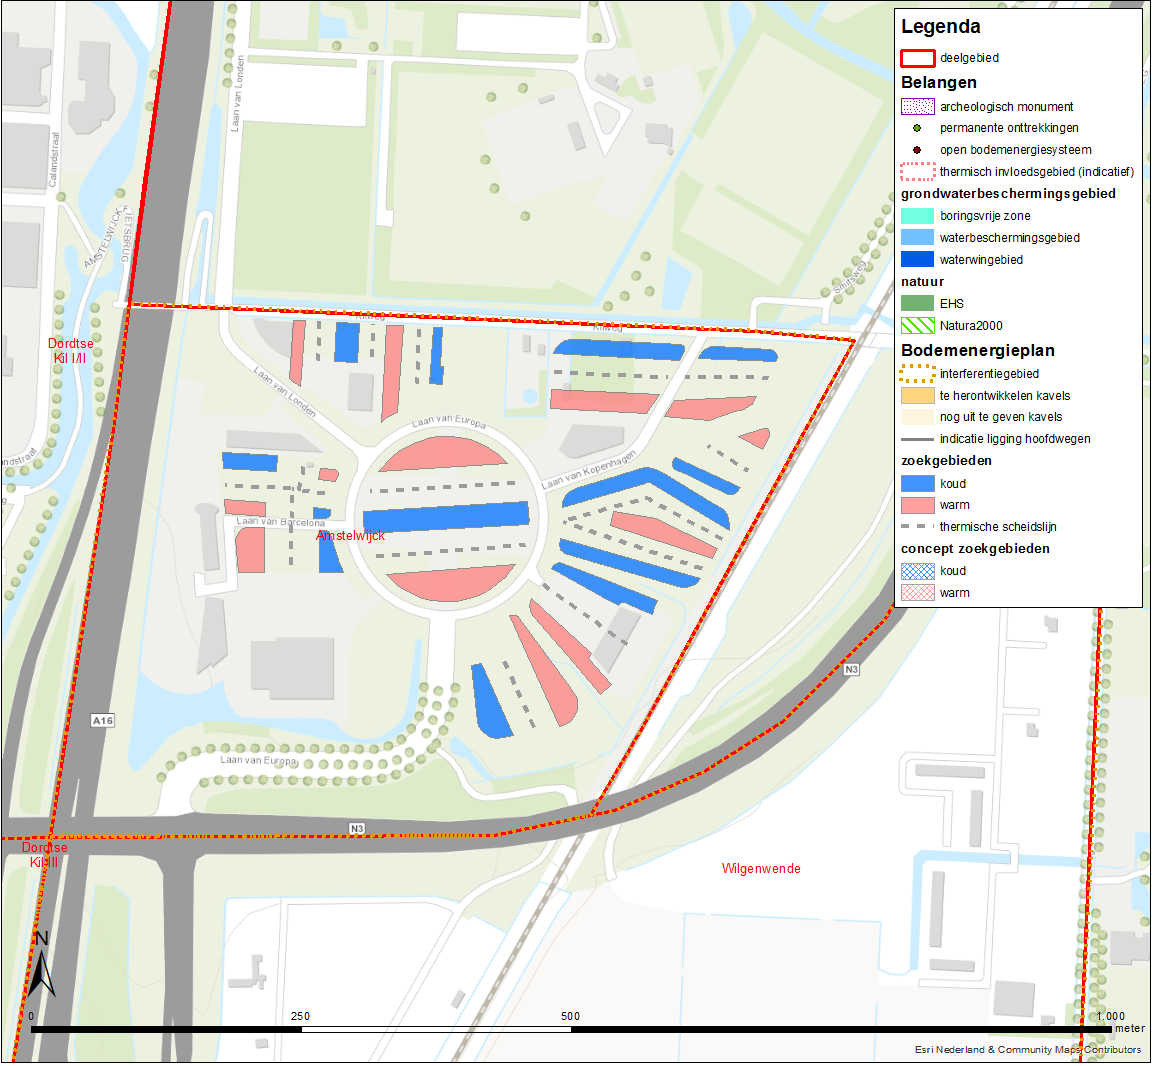 3.1.5 Amstelwijck Amstelwijck is een kantorenpark waarvan nog kavels kunnen worden uitgegeven. Zowel open als gesloten bodemenergiesystemen zijn in dit gebied denkbaar.